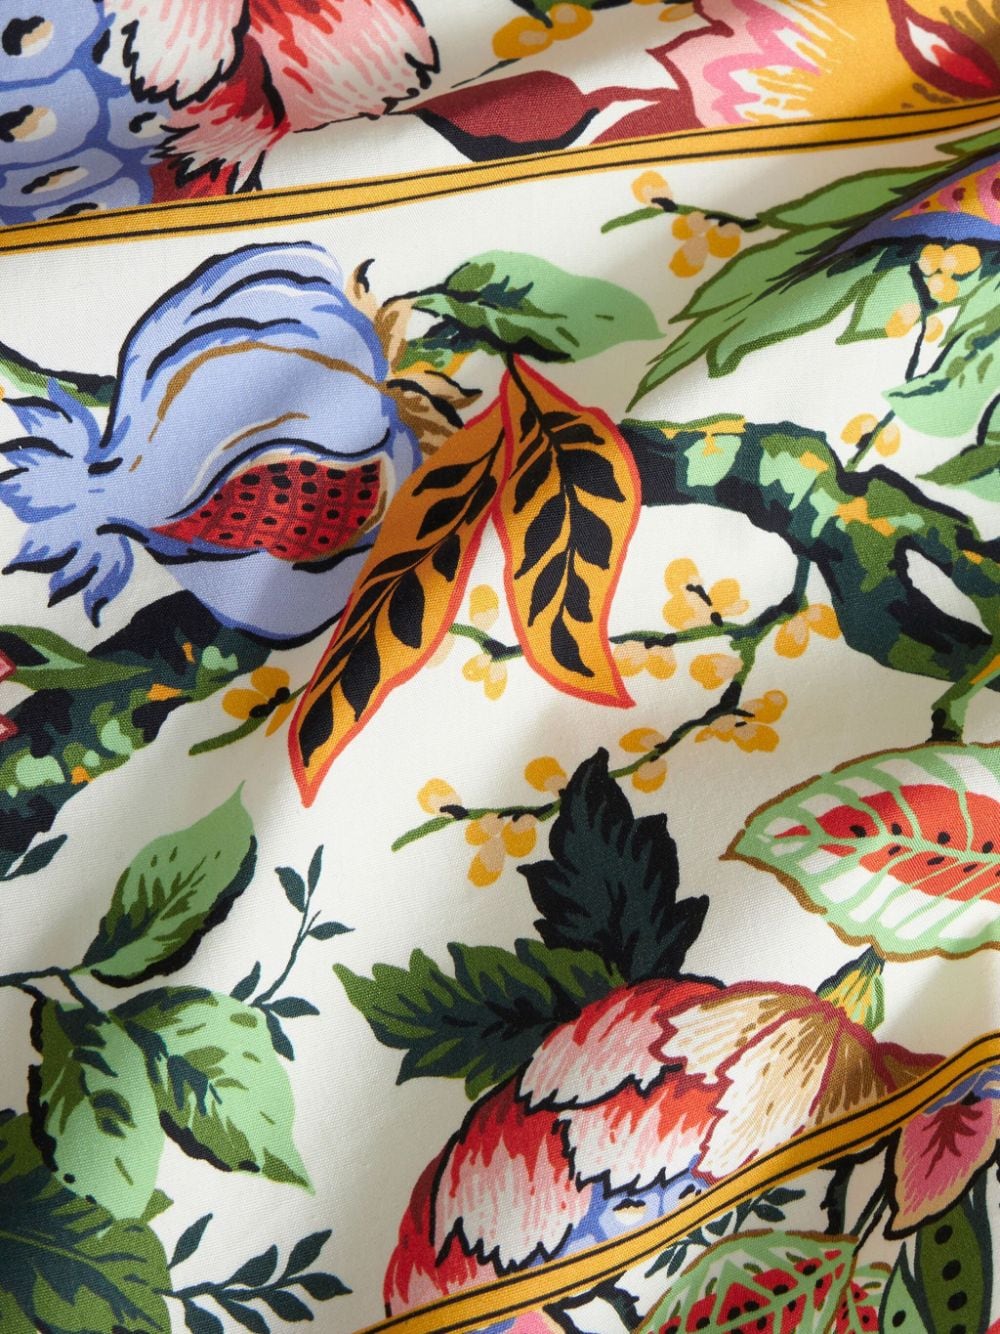 Multicolor floral print shirt